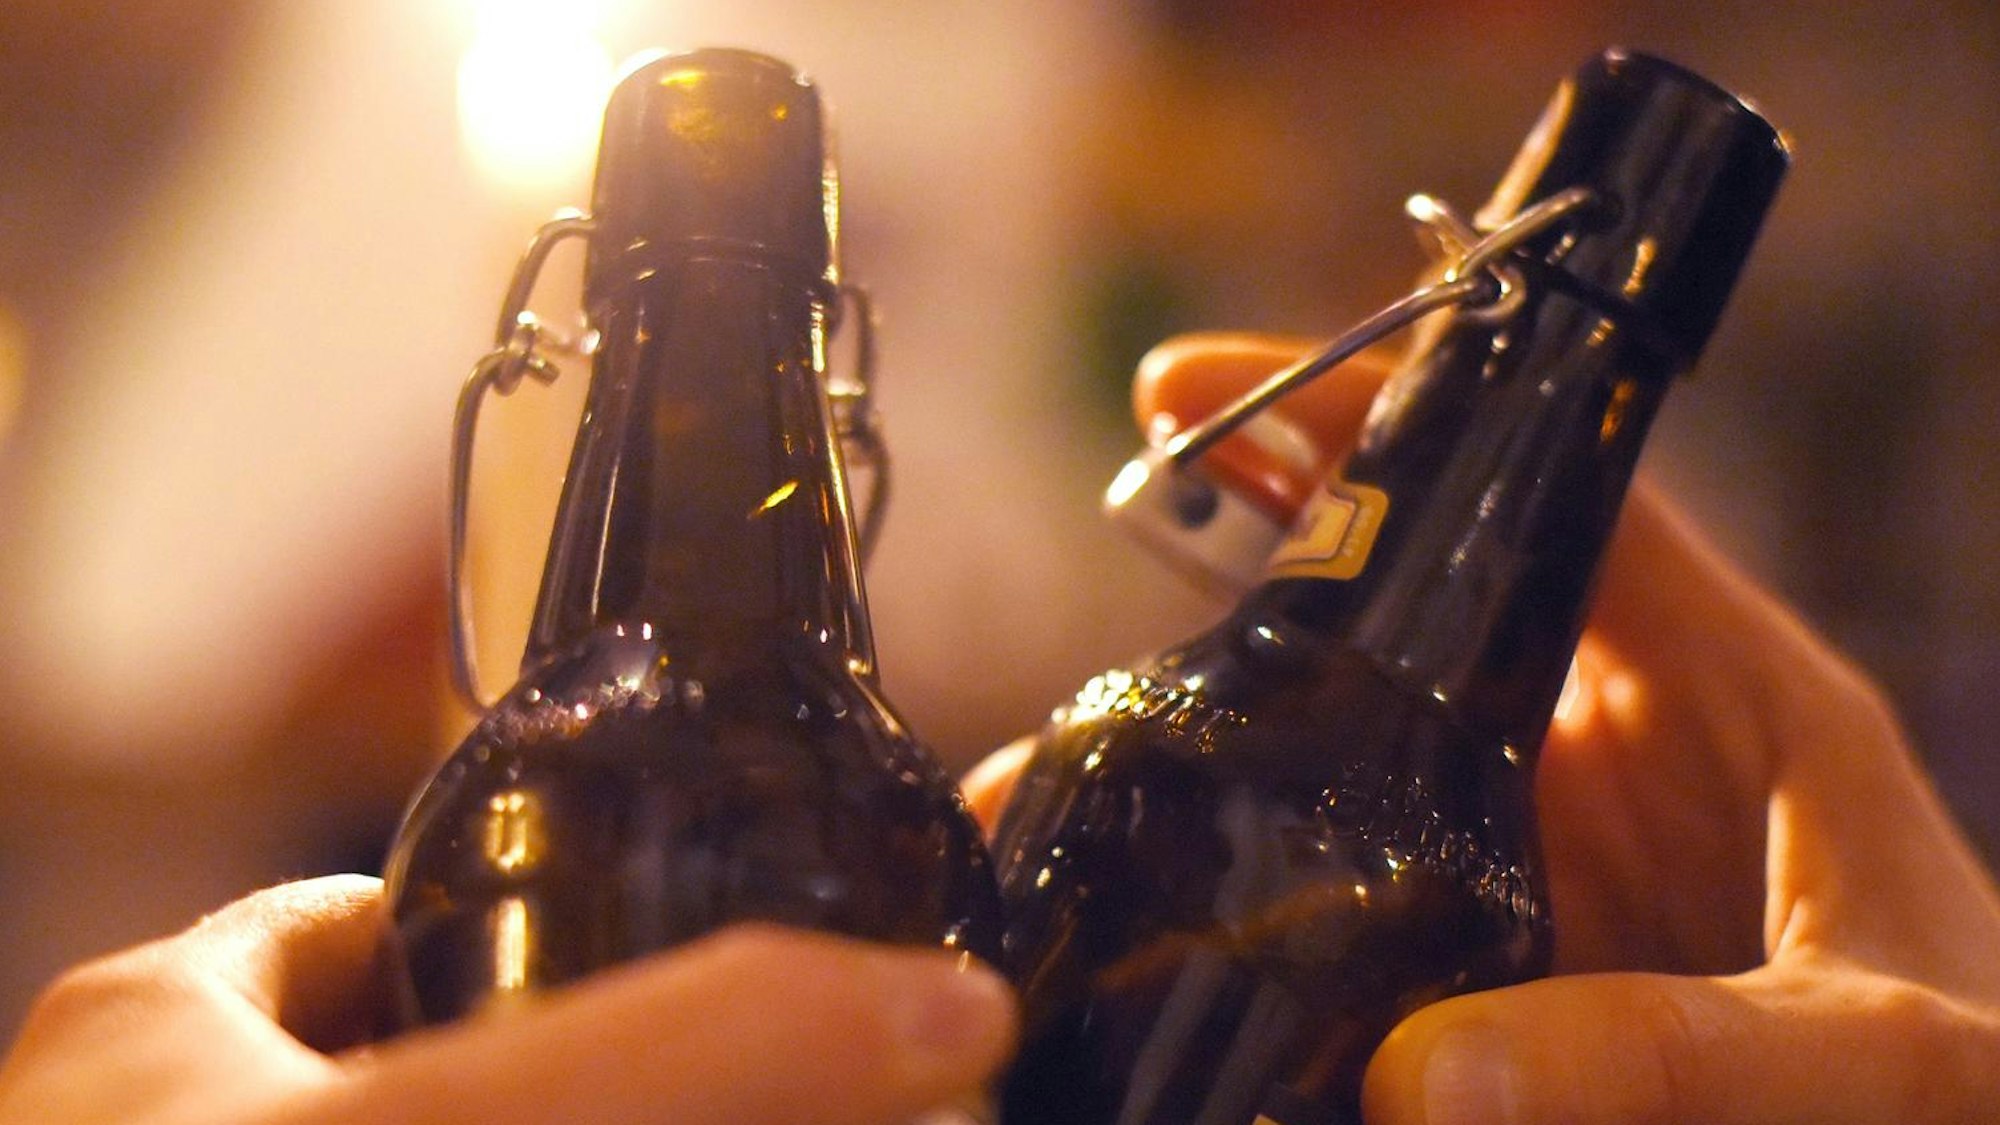 Auch alkoholfreies Bier kann Alkohol enthalten. Ein Experte erklärt die Details. Unser Foto zeigt zwei Personen beim Anstoßen – in diesem Fall mit alkoholhaltigem Bier.